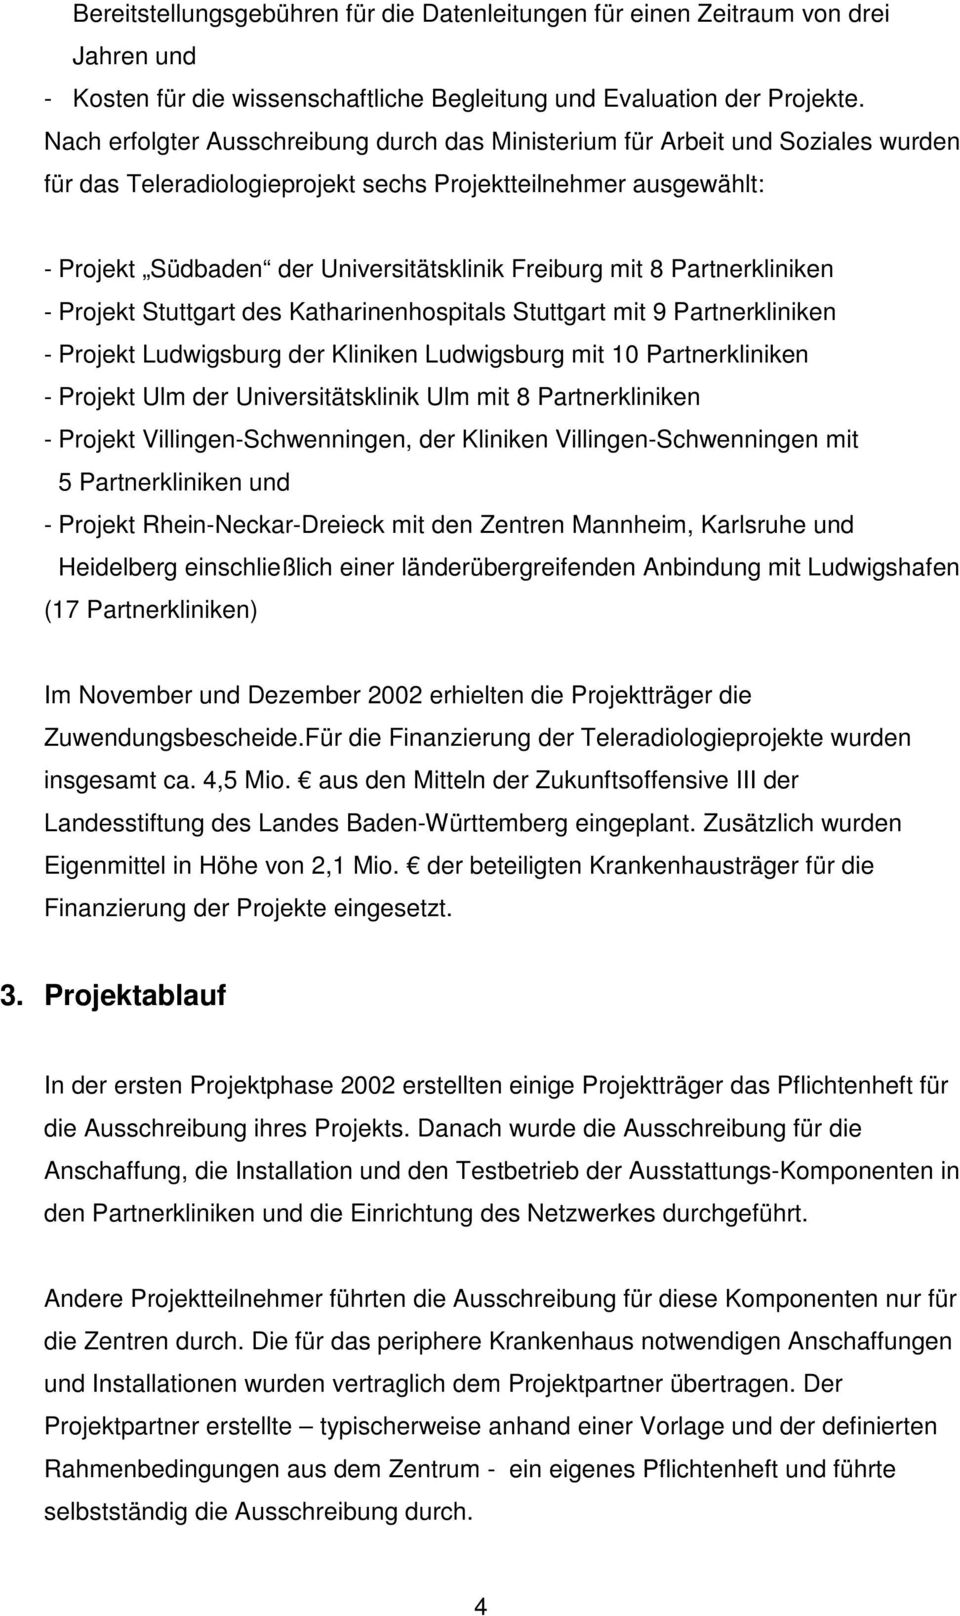 mit 8 Partnerkliniken - Projekt Stuttgart des Katharinenhospitals Stuttgart mit 9 Partnerkliniken - Projekt Ludwigsburg der Kliniken Ludwigsburg mit 10 Partnerkliniken - Projekt Ulm der